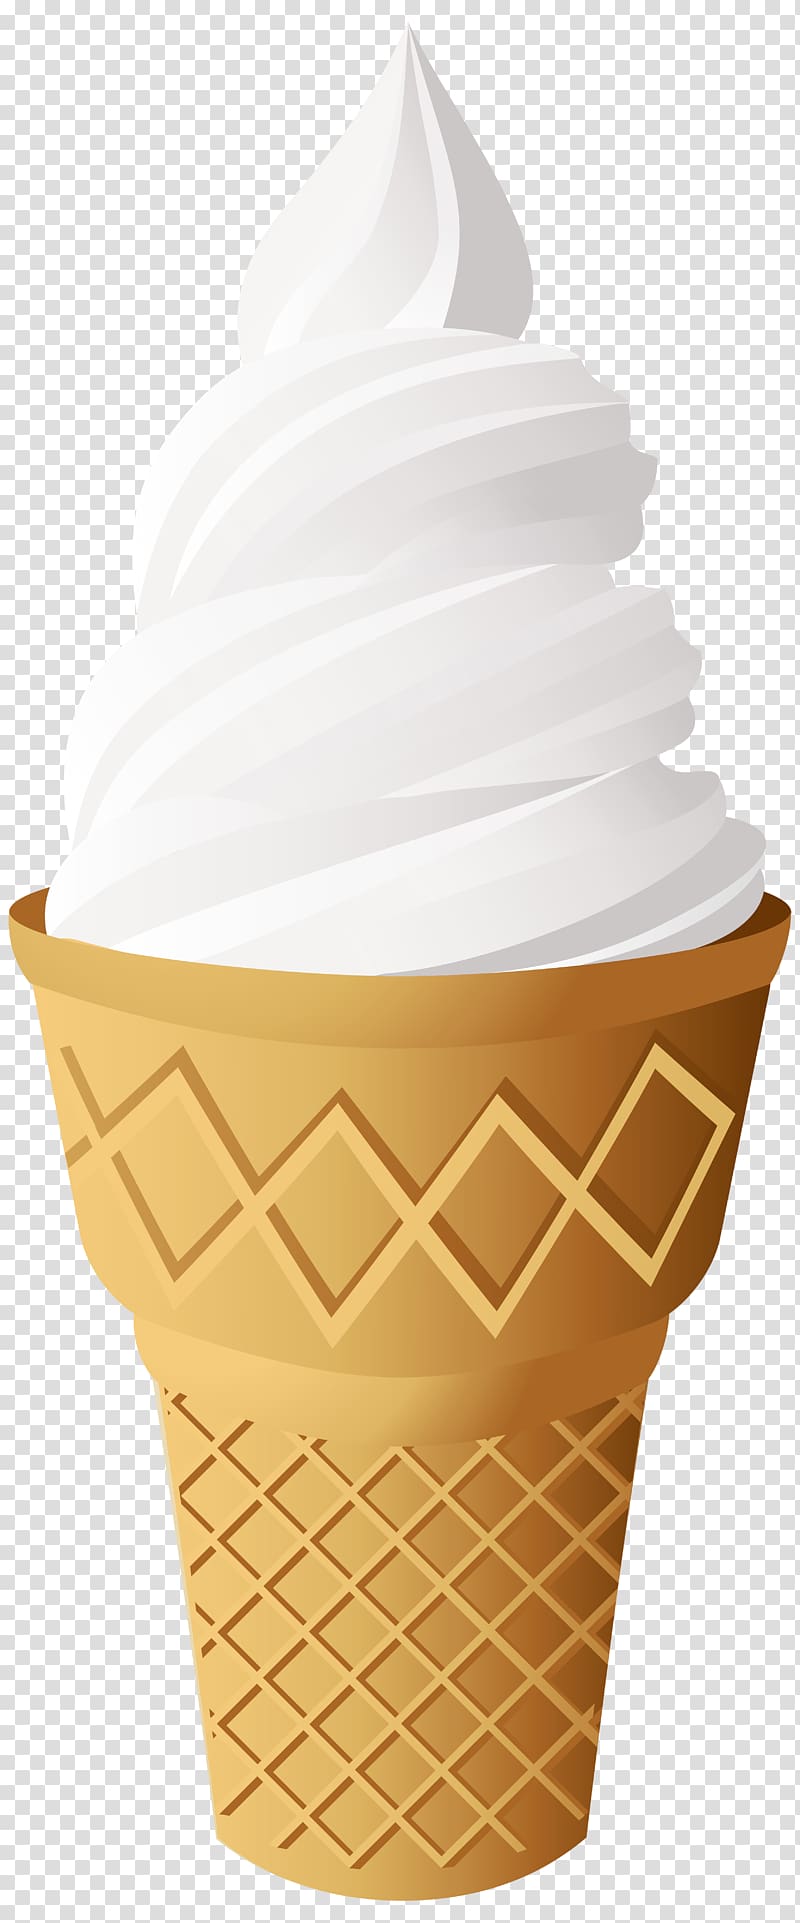 white ice cream with cone, Ice Cream Cones Sundae Neapolitan ice cream, ice cream transparent background PNG clipart